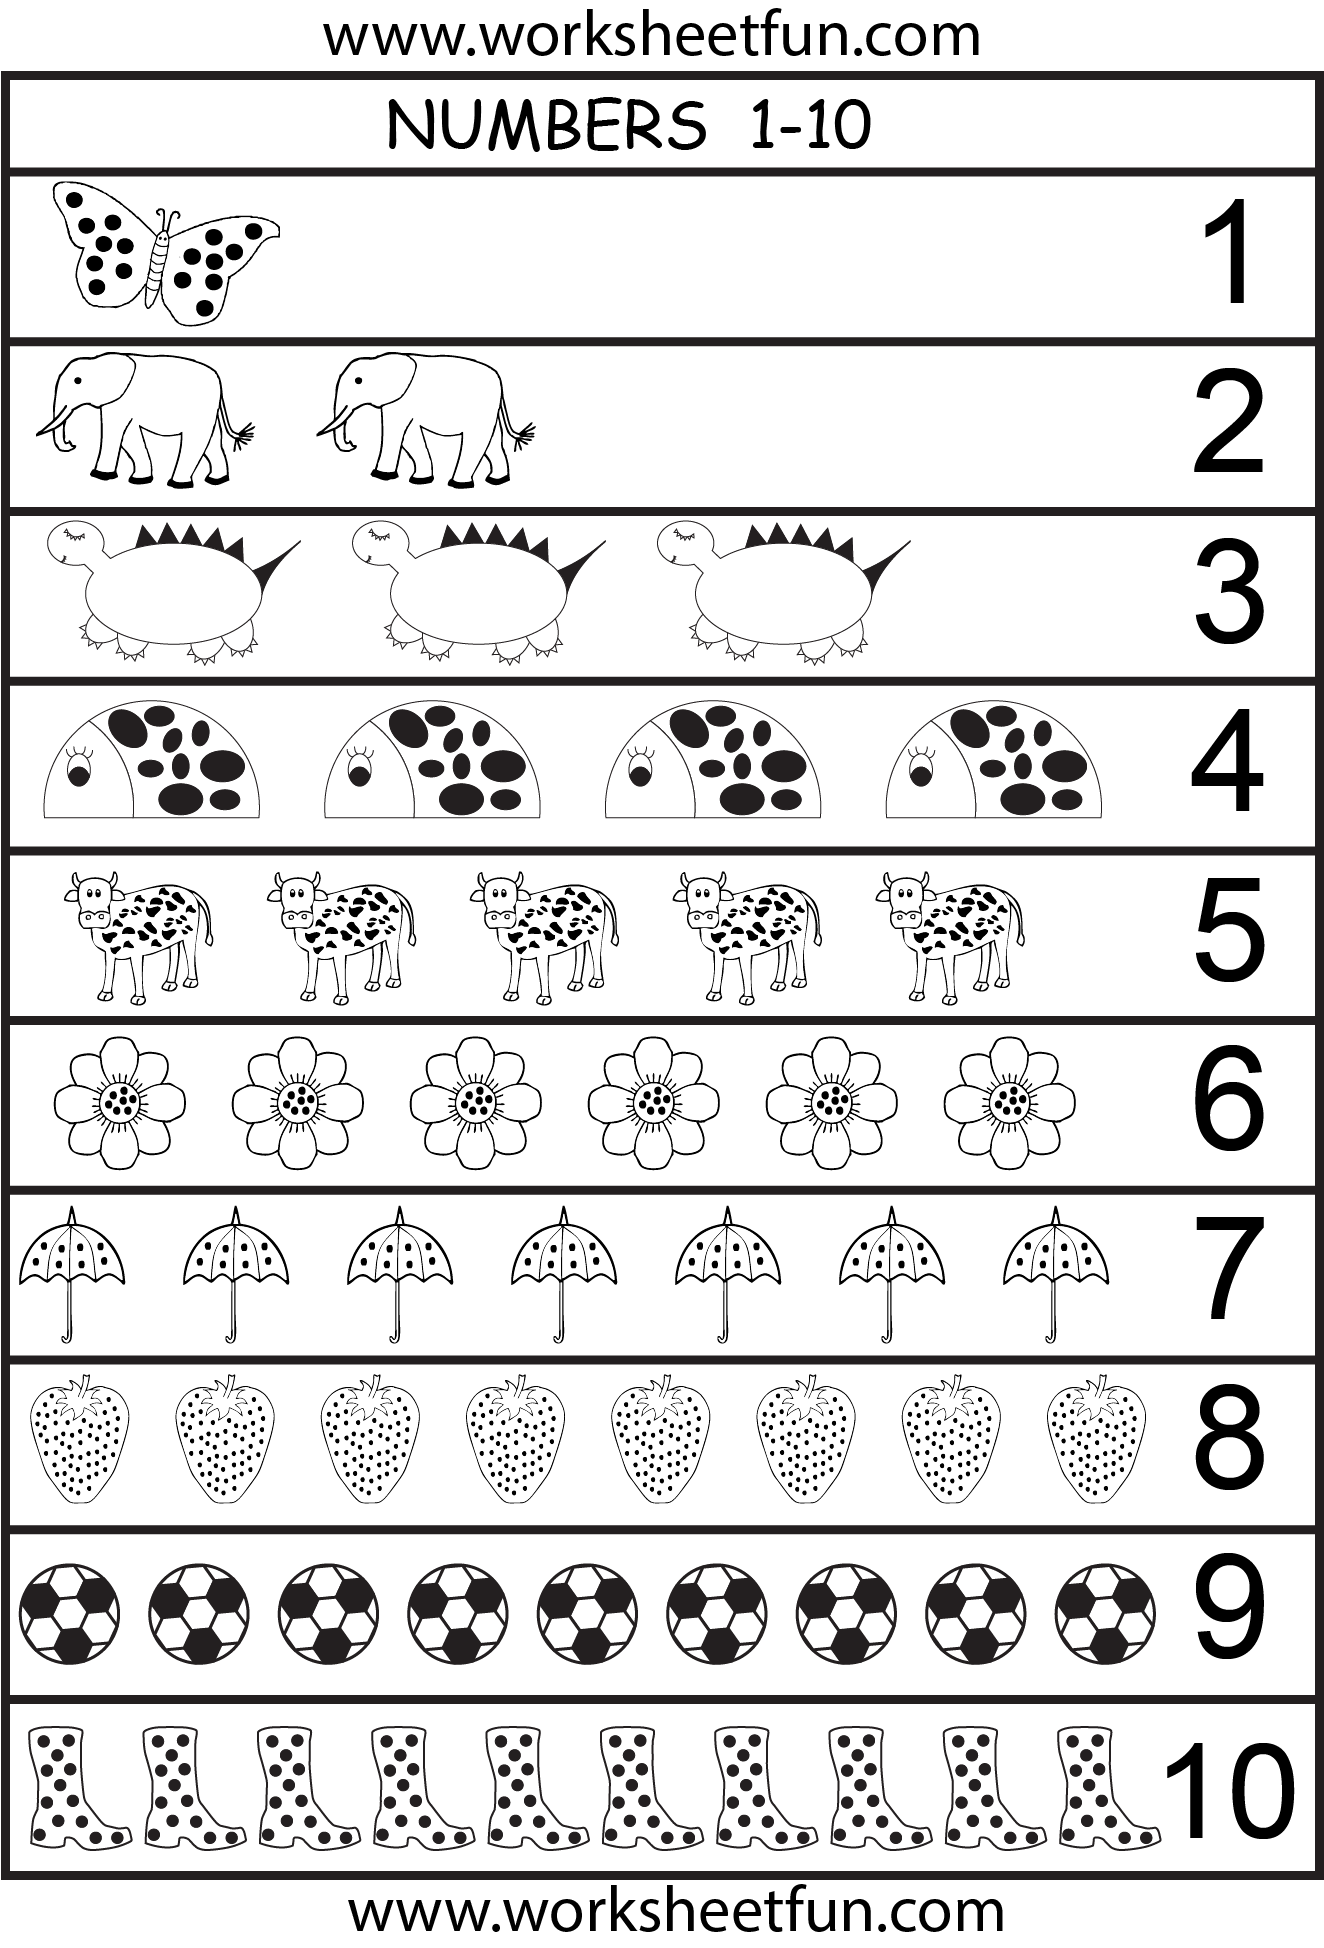 6-best-images-of-printable-number-chart-1-10-kindergarten-number